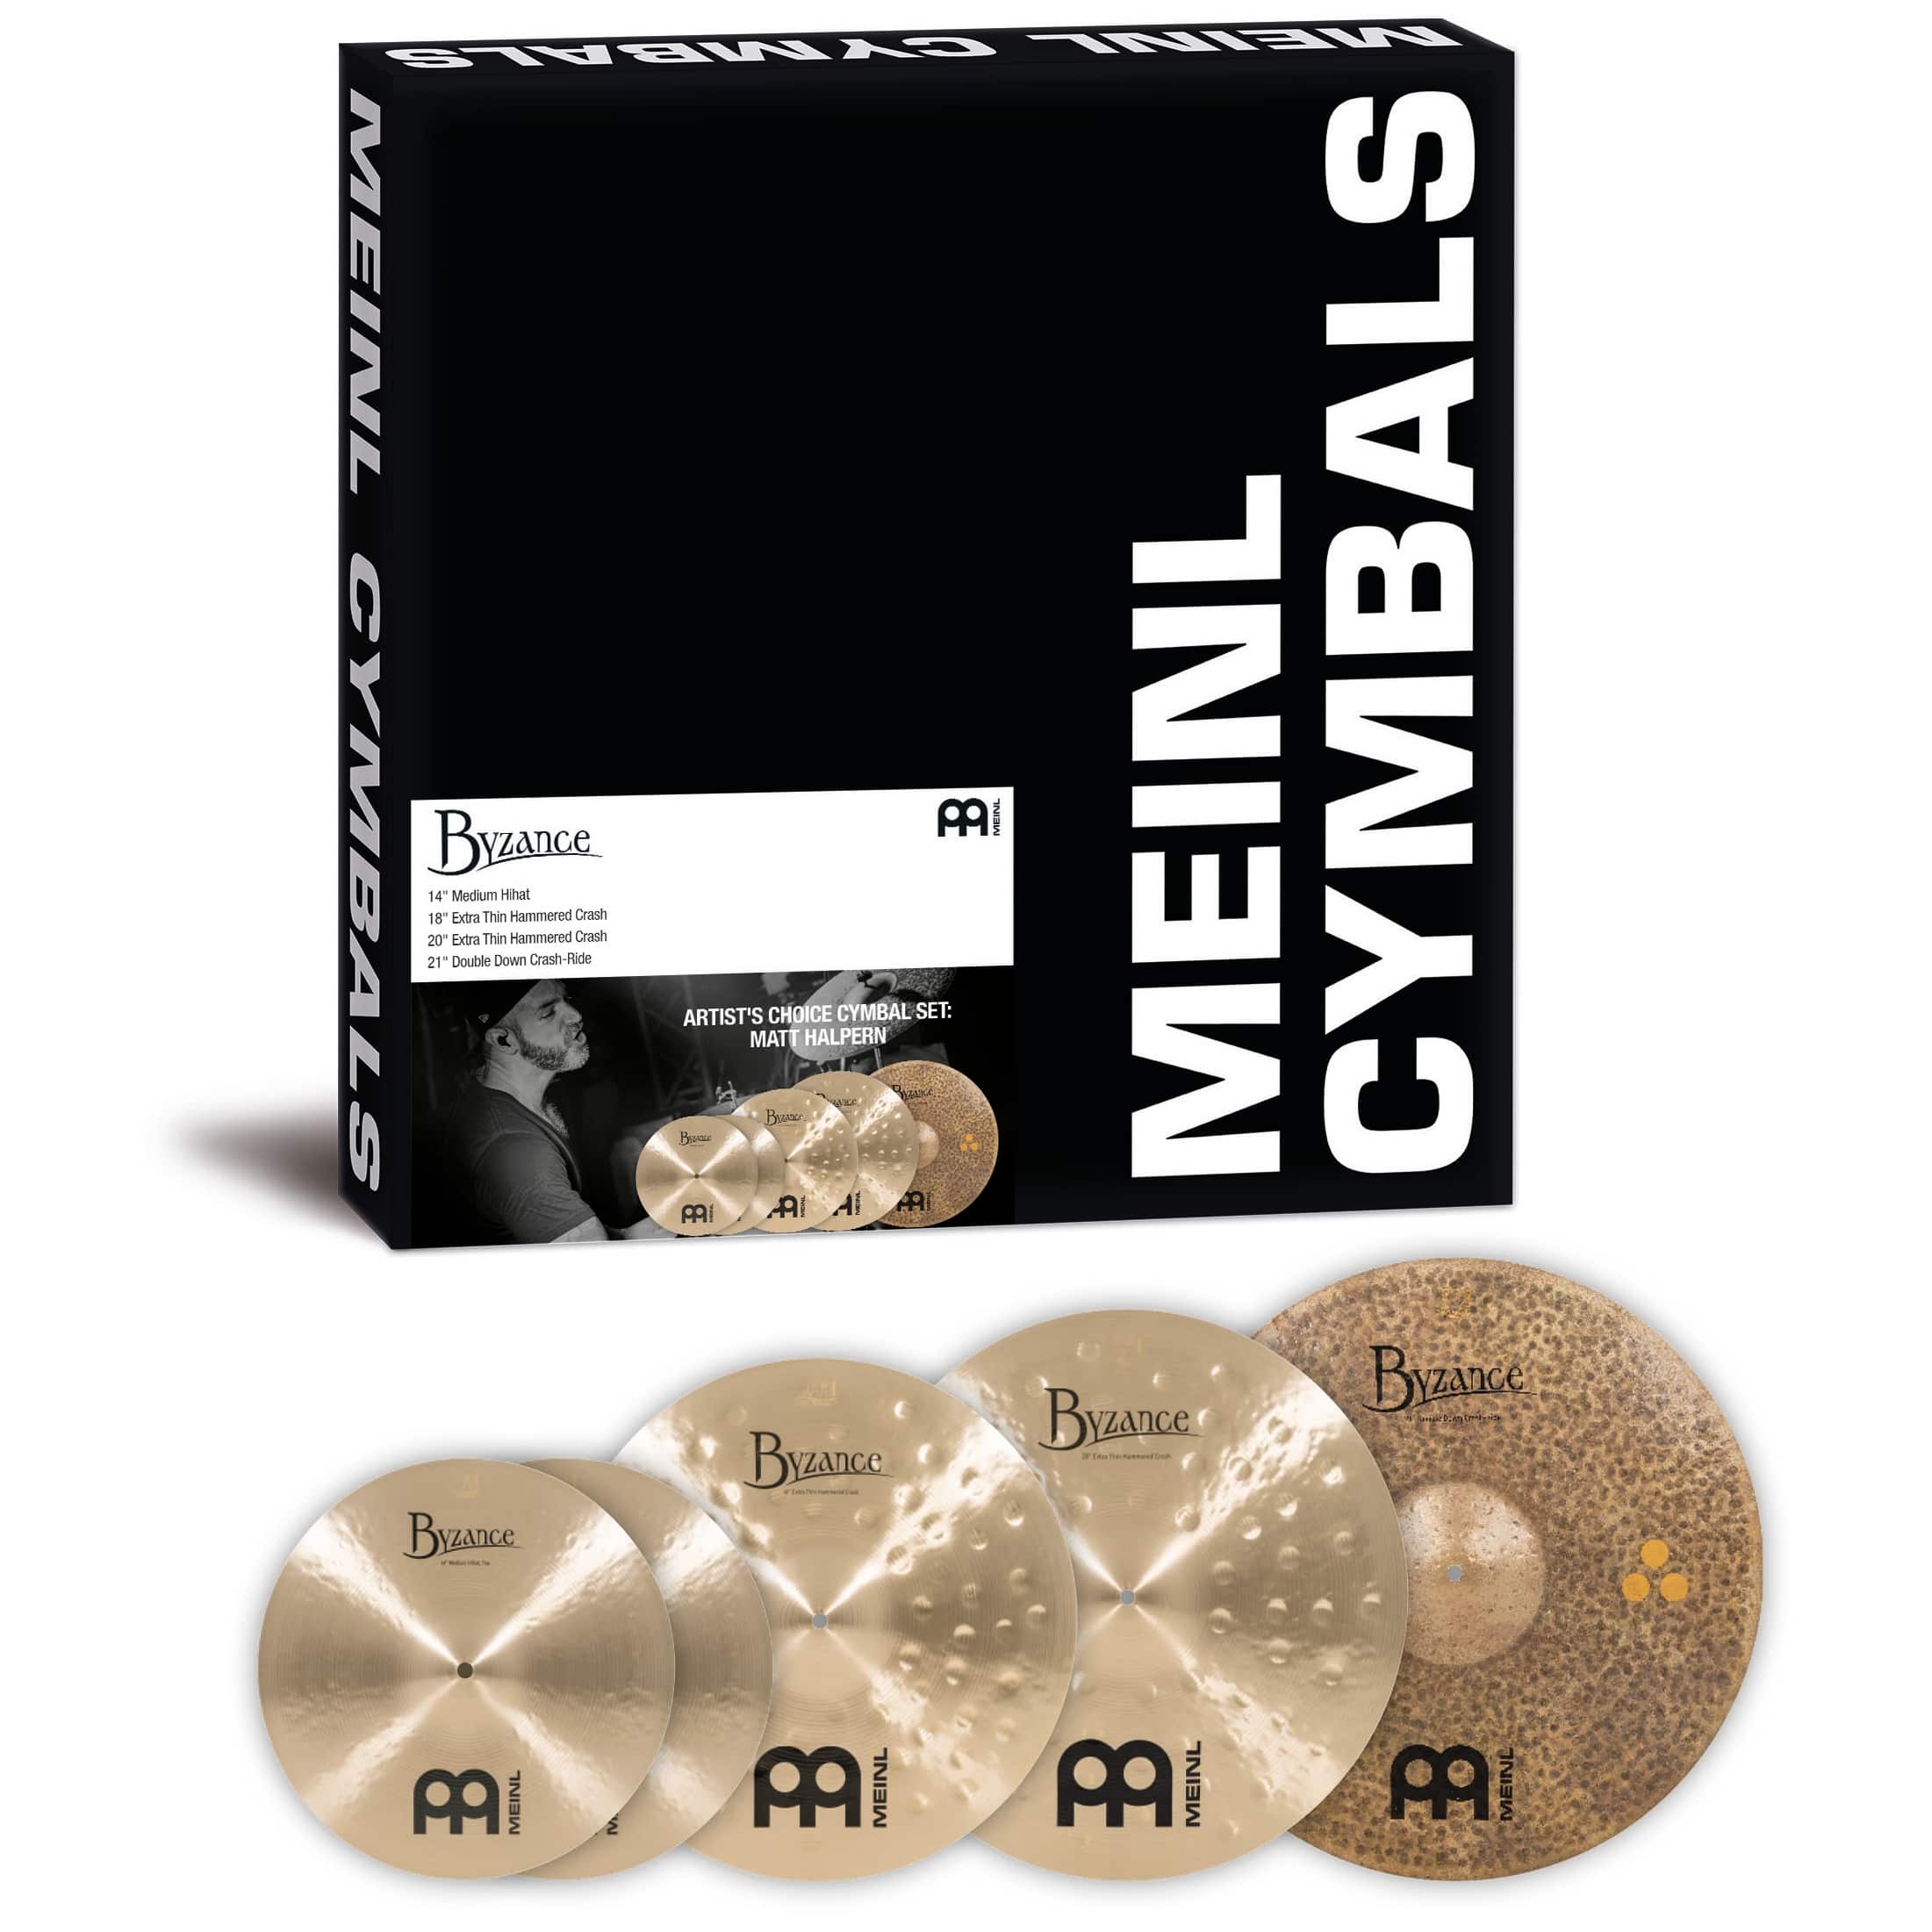 Meinl Cymbals A-CS2 - Byzance Artist's Choice Cymbal Set: Matt Halpern